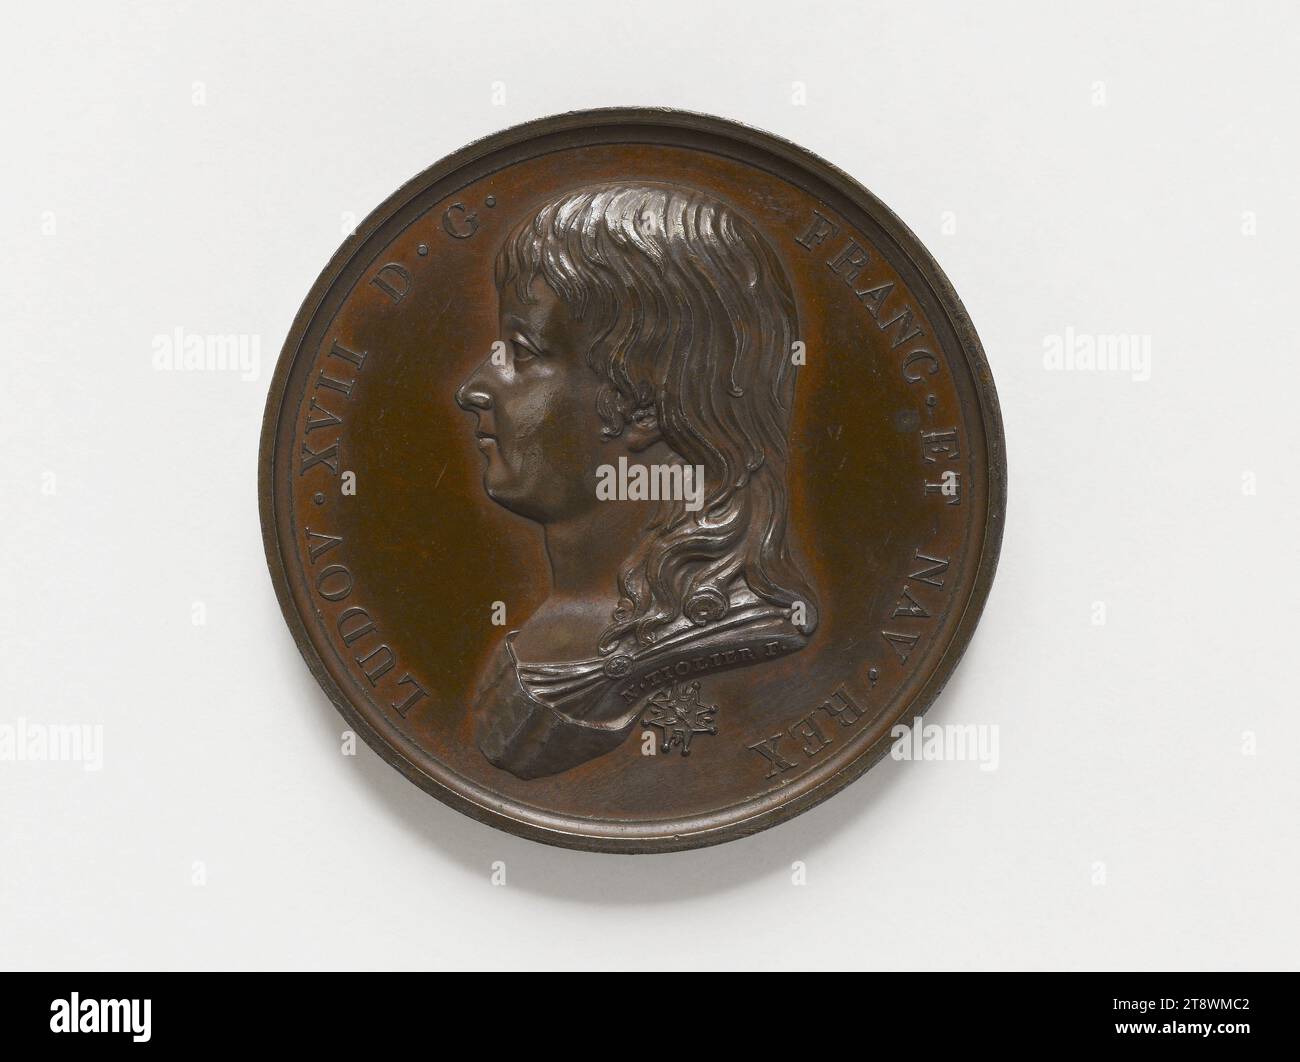 Luigi XVII (1785-1795), Tiolier, Nicolas-Pierre, Medal Engraver, Numismatic, Medal Foto Stock